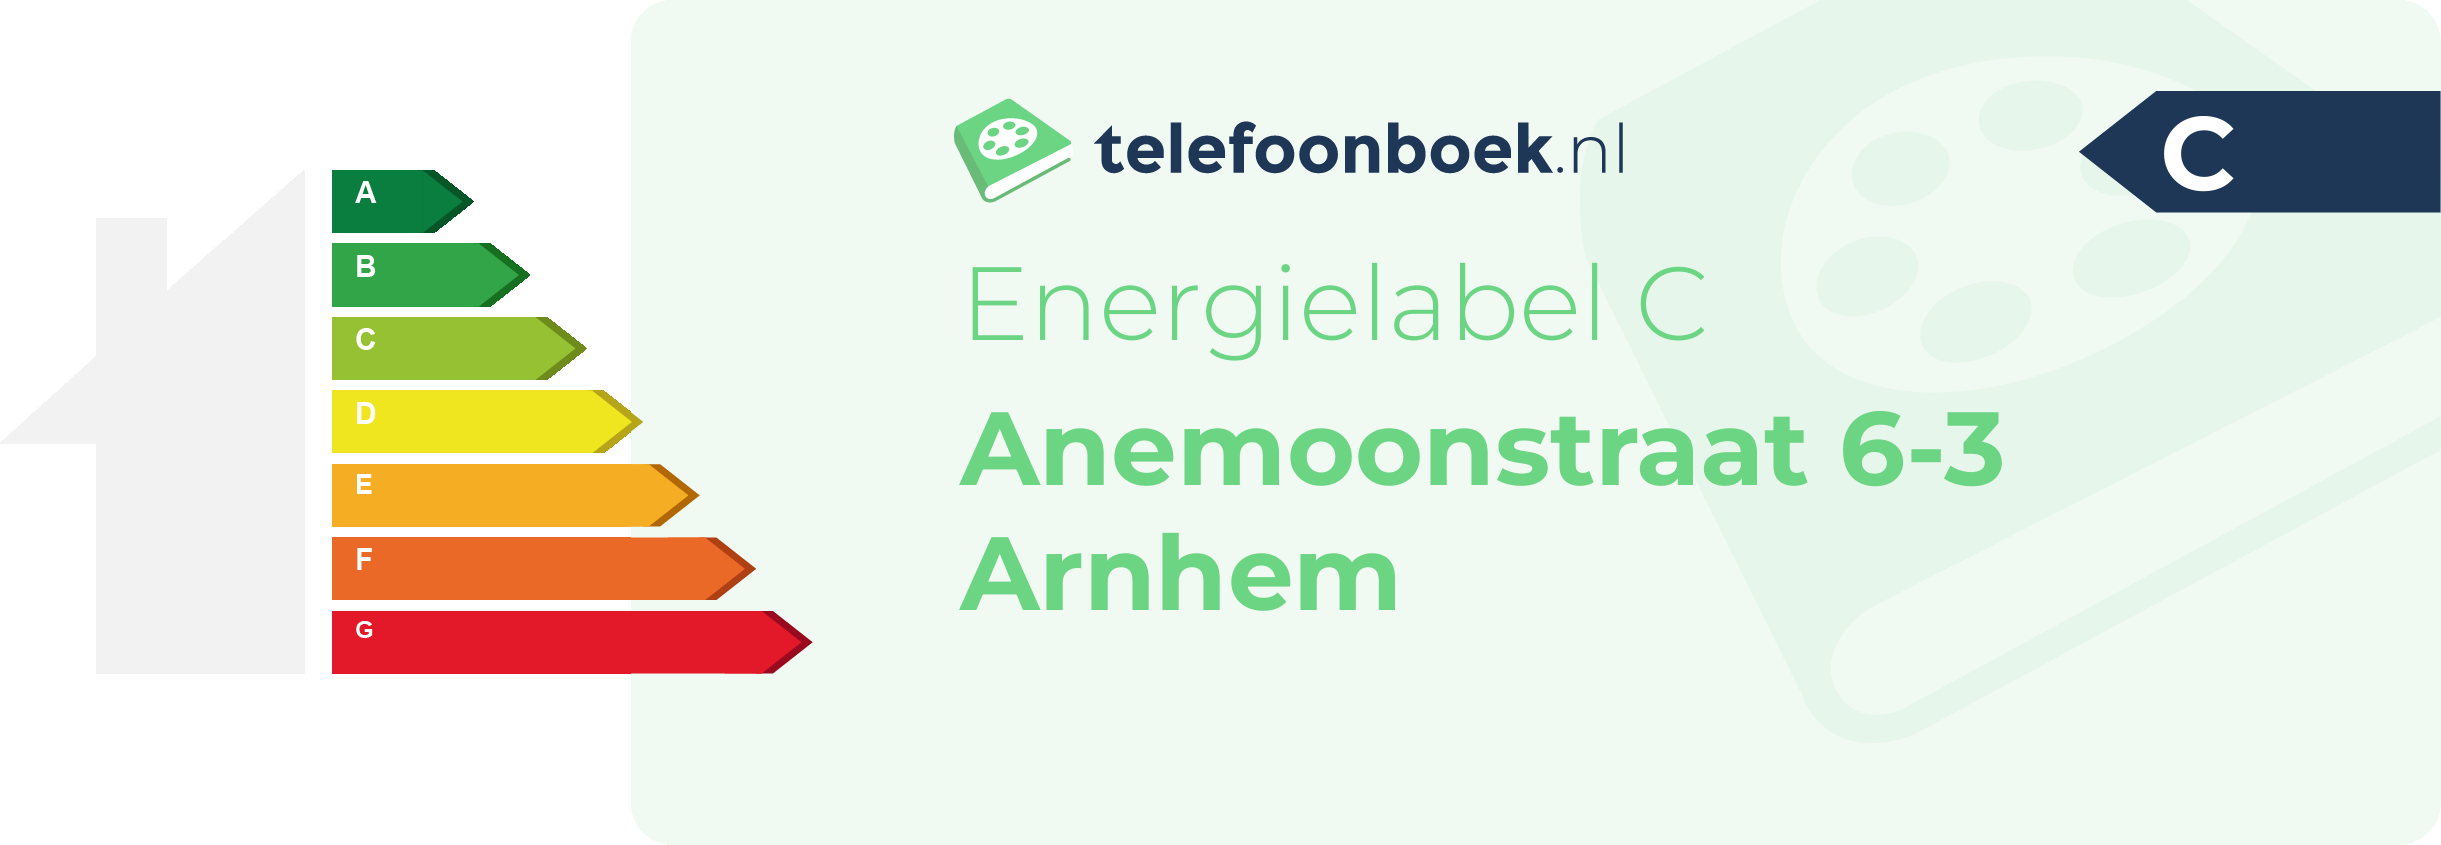 Energielabel Anemoonstraat 6-3 Arnhem